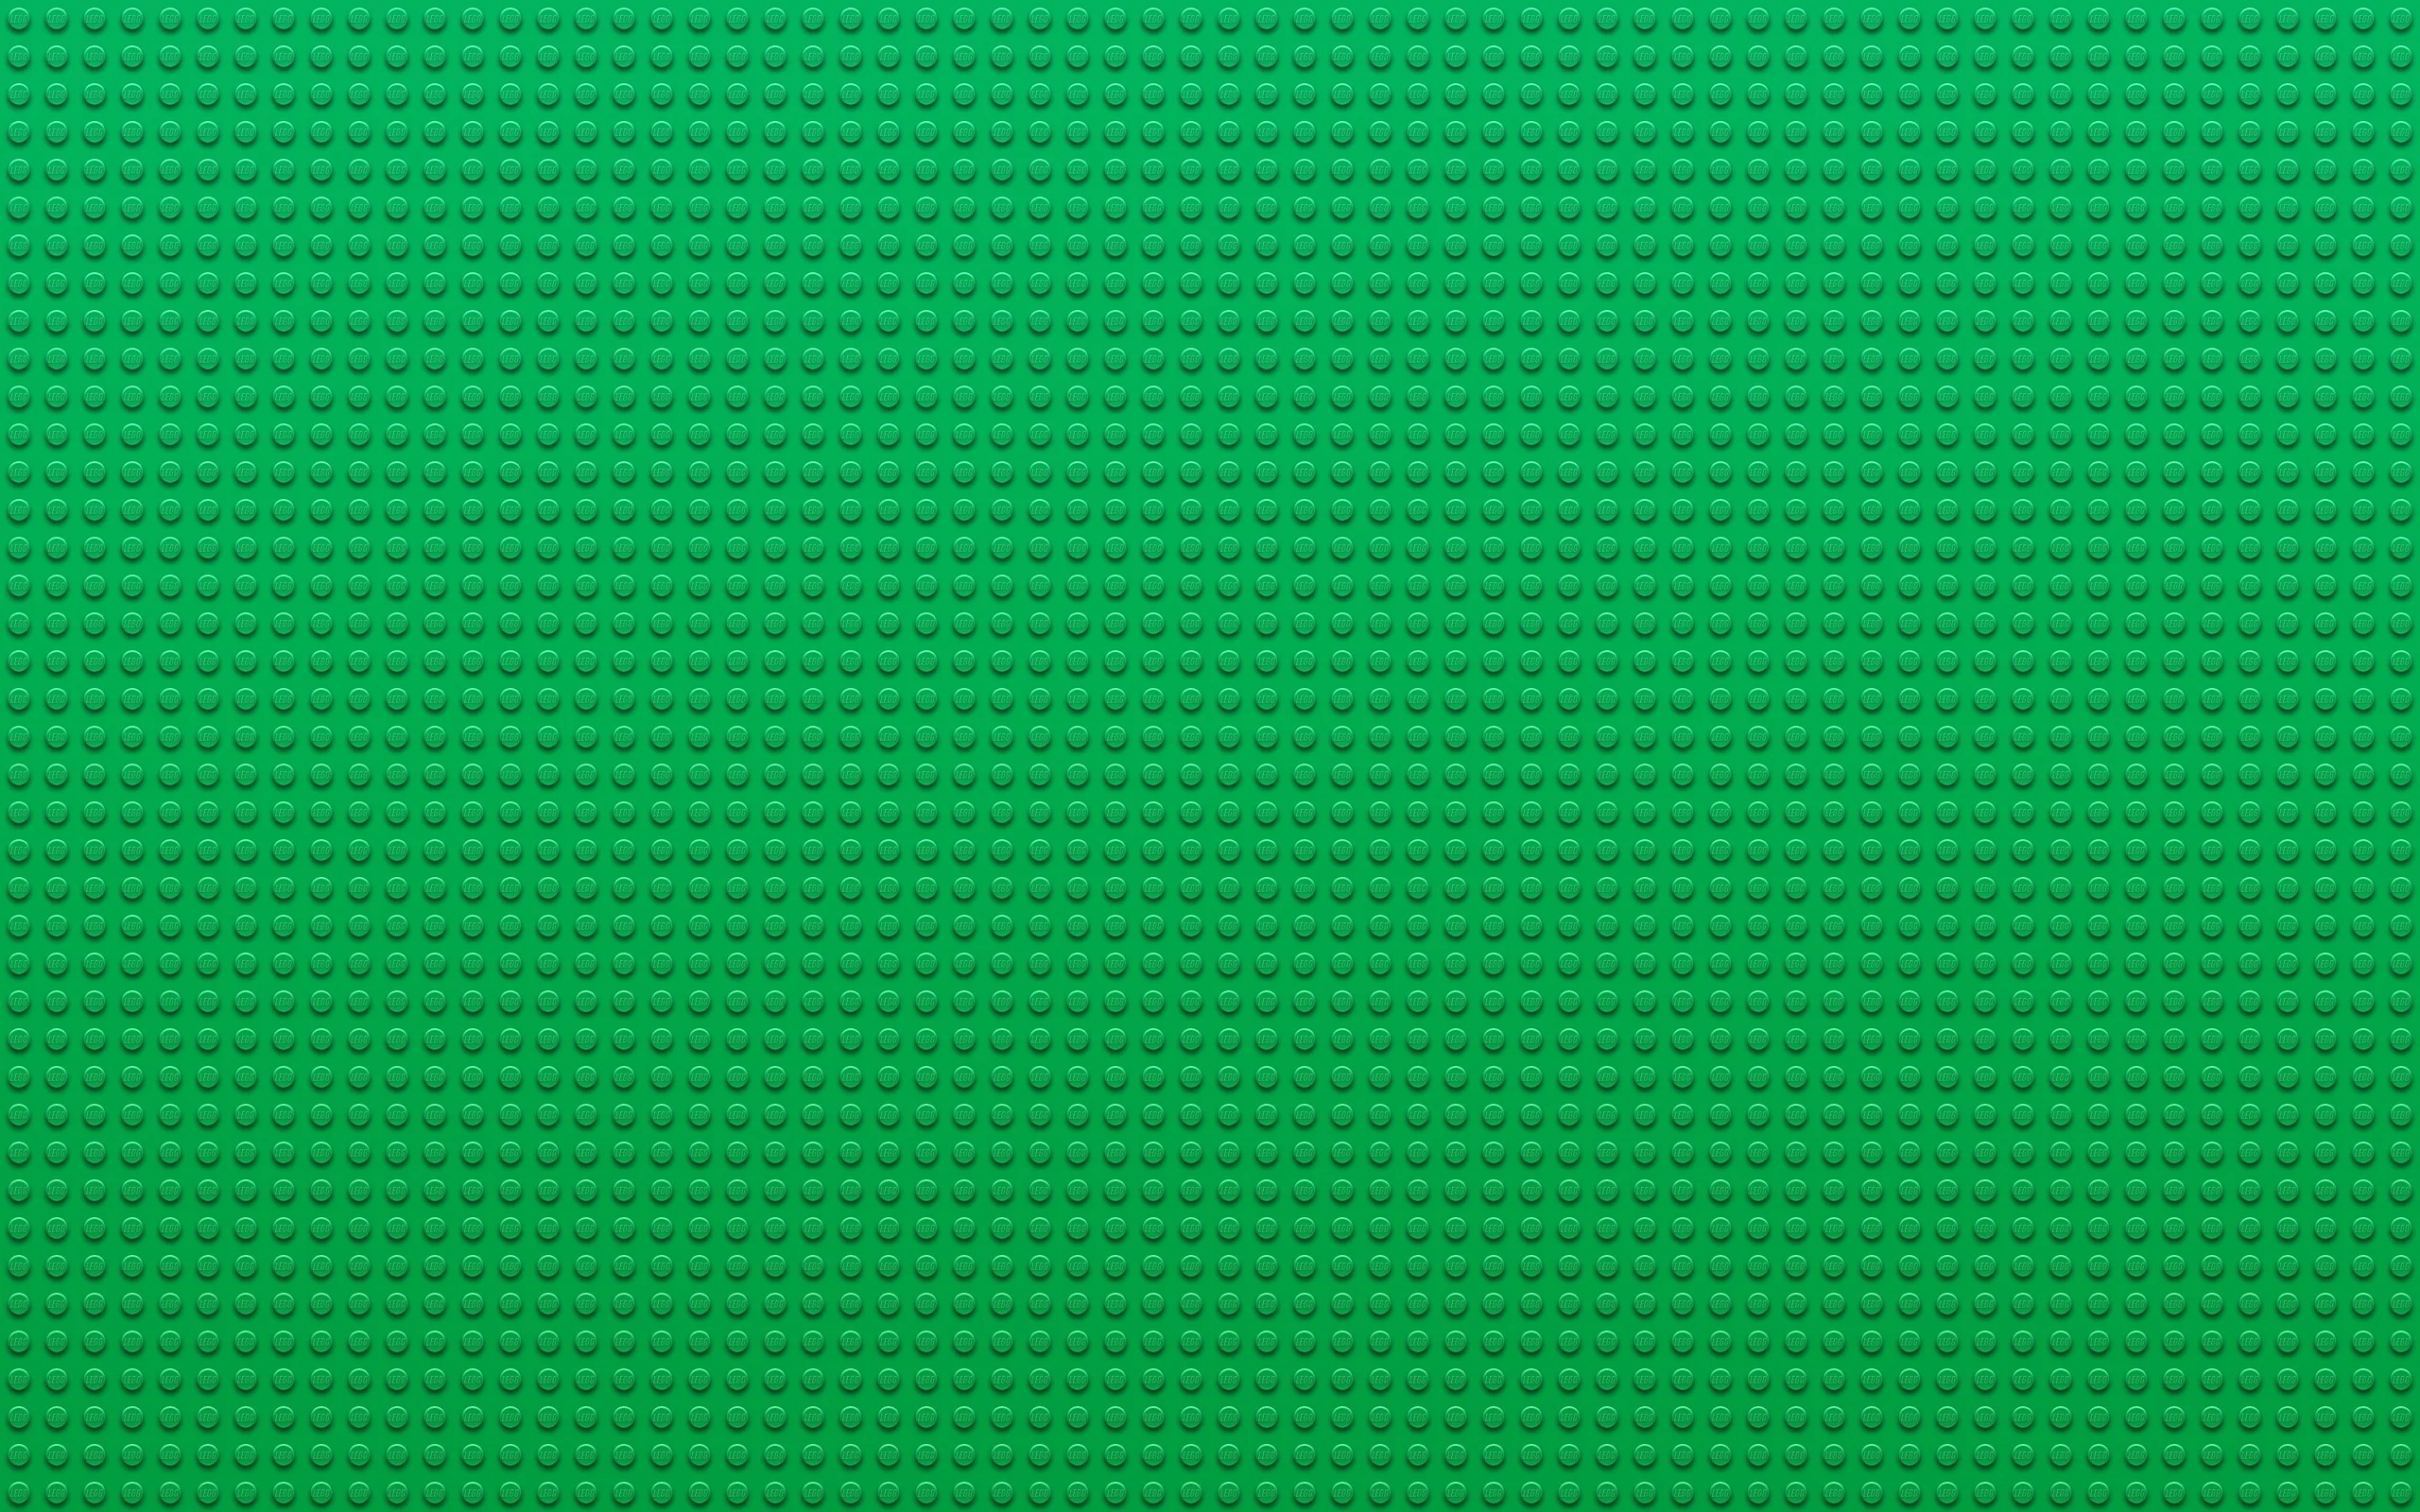 Green Lego Wallpaper Green, Lego, Textures, Dots